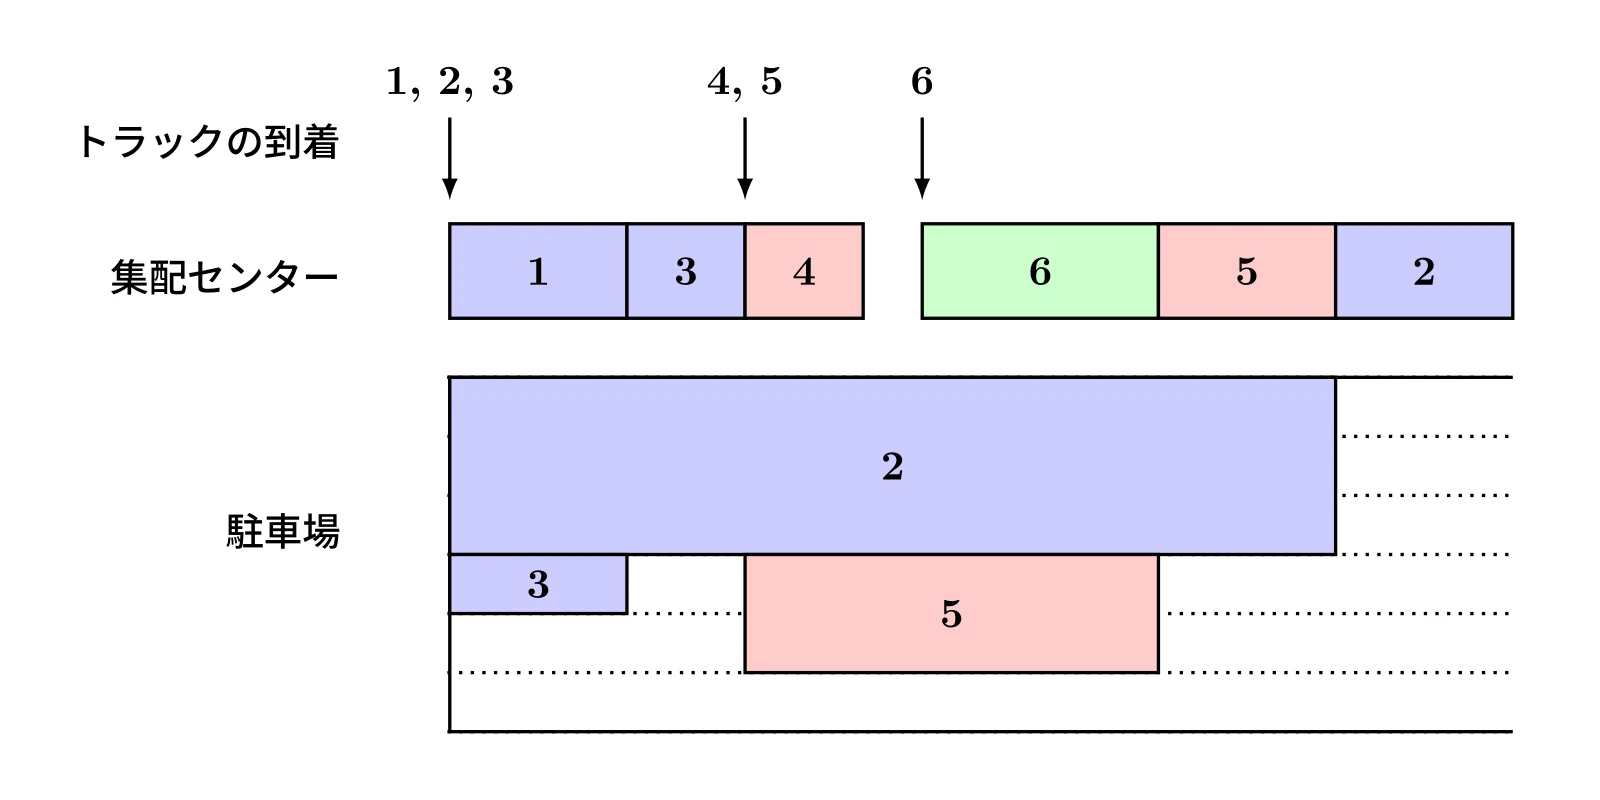 (図2) 作業スケジュールの例